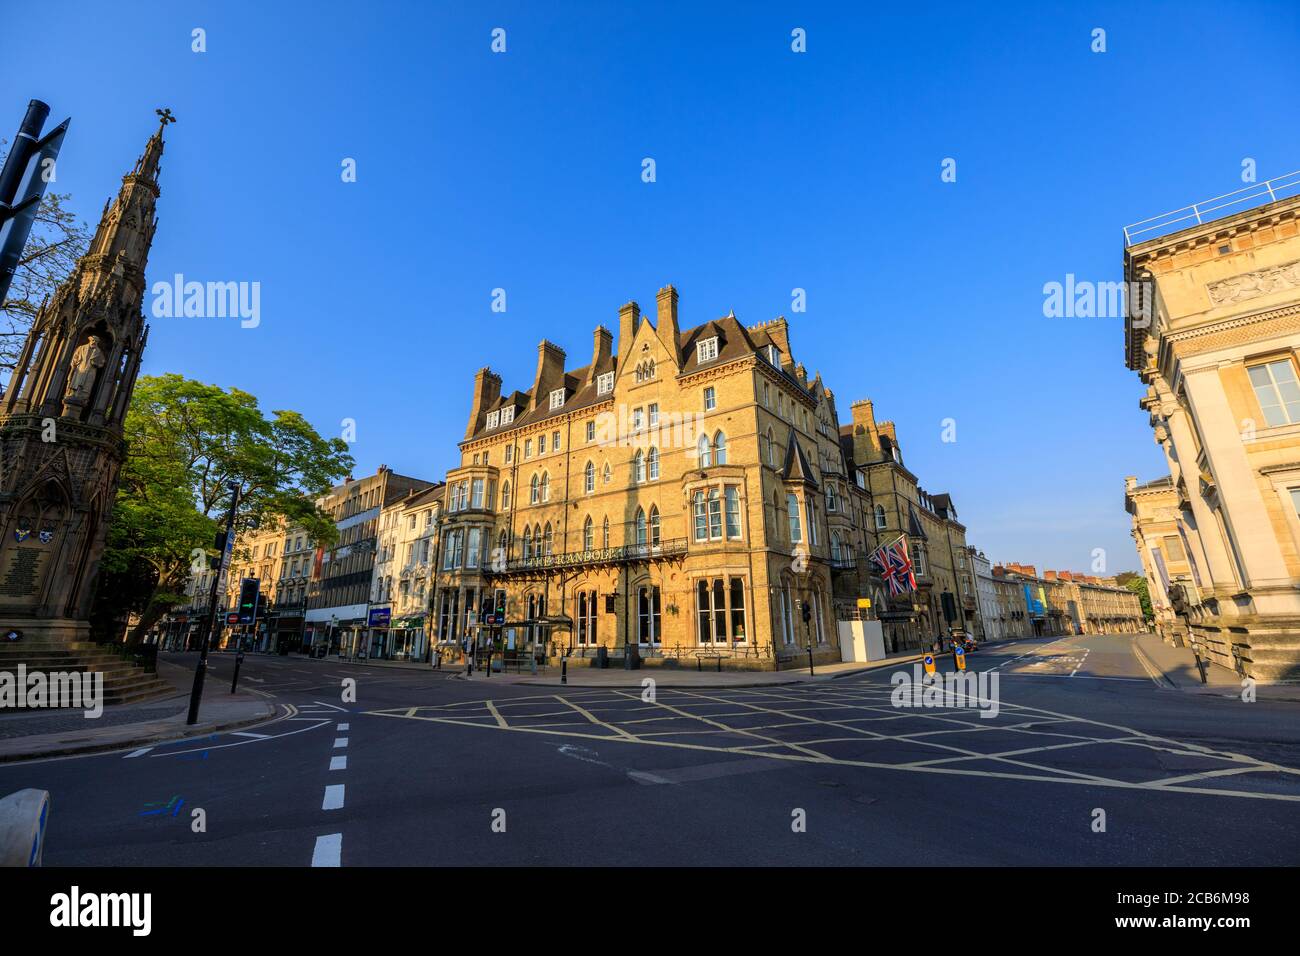 Centro di Oxford, St Giles, al mattino in una giornata limpida con cielo blu. Oxford, Inghilterra, Regno Unito. Foto Stock